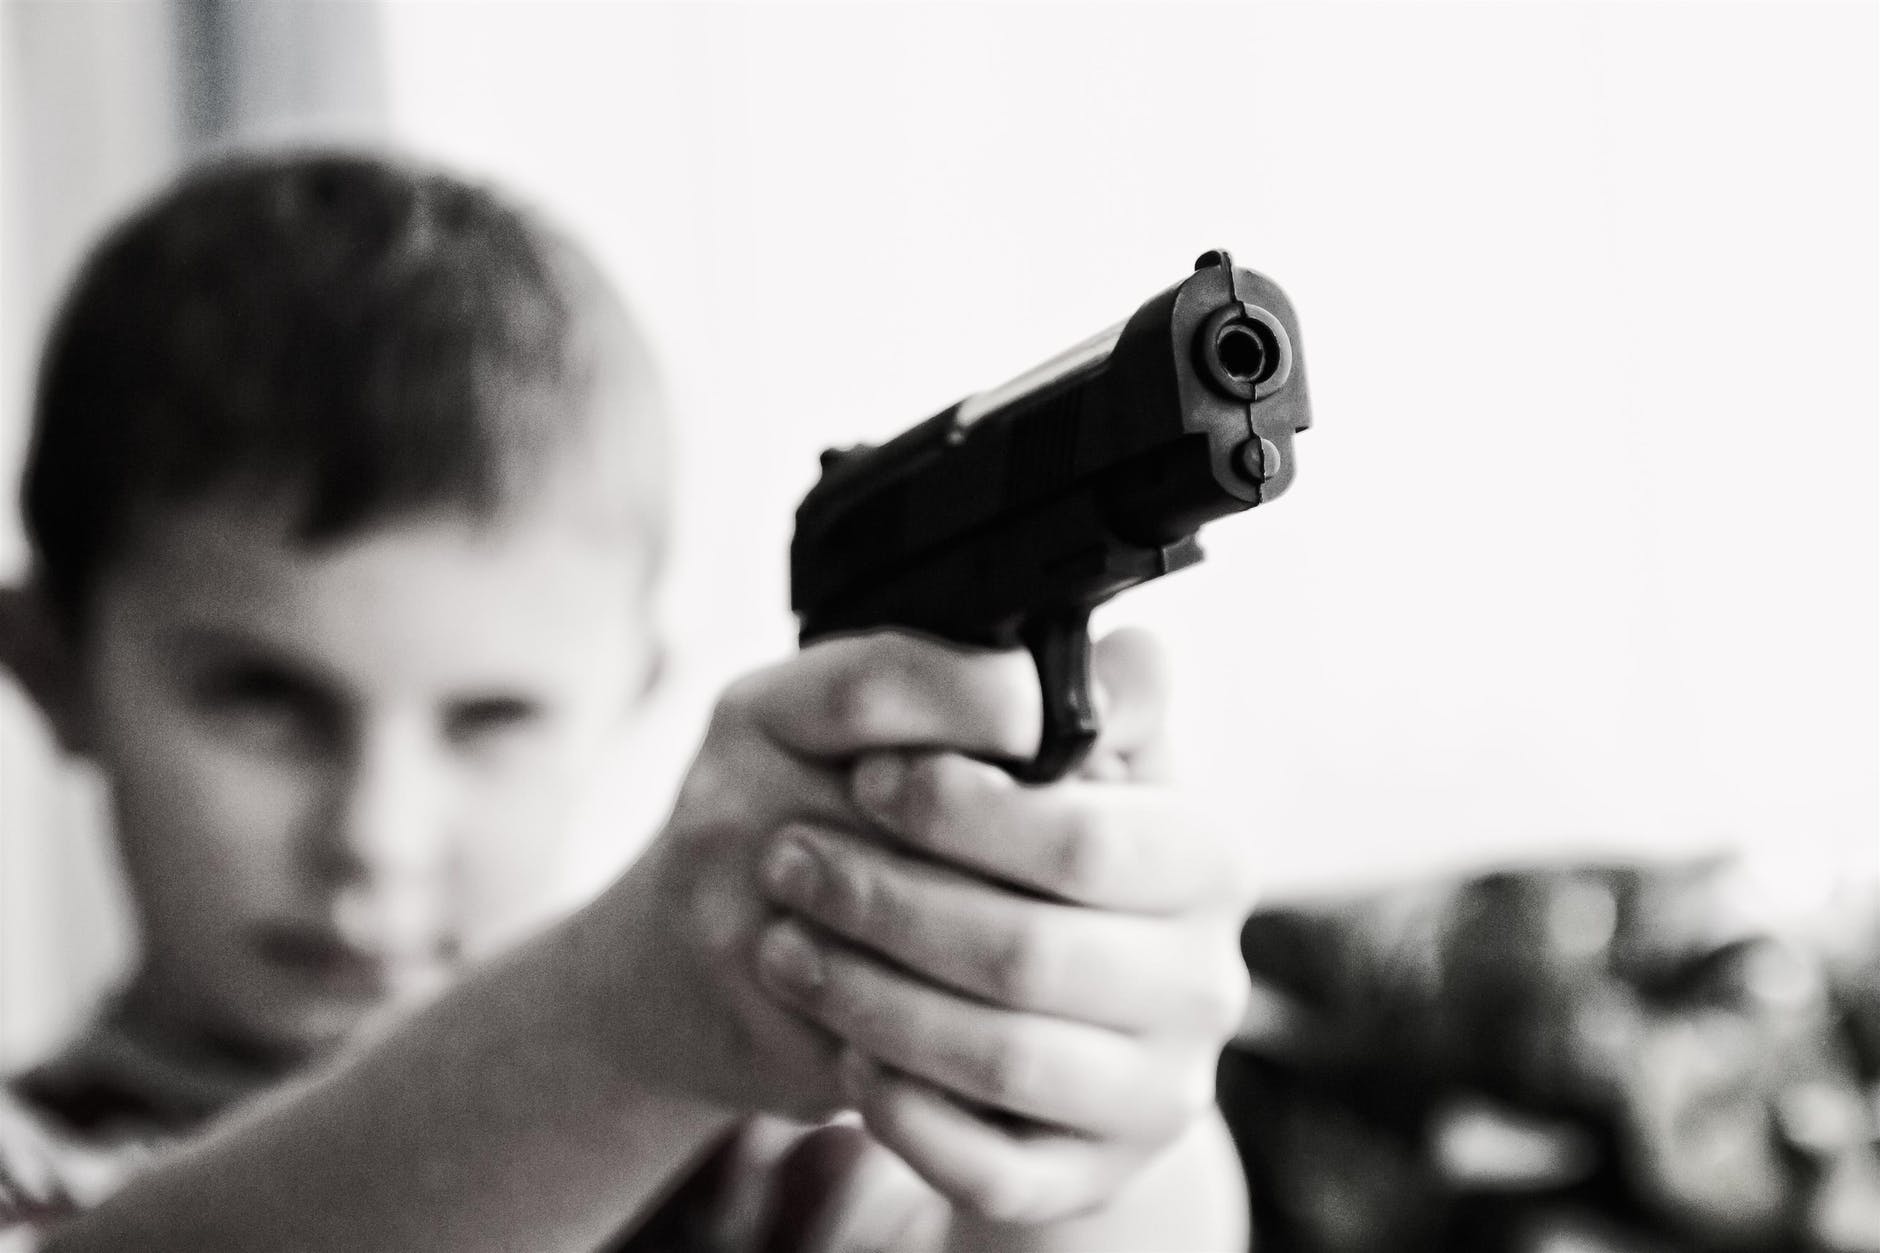 Nerf guns for kids